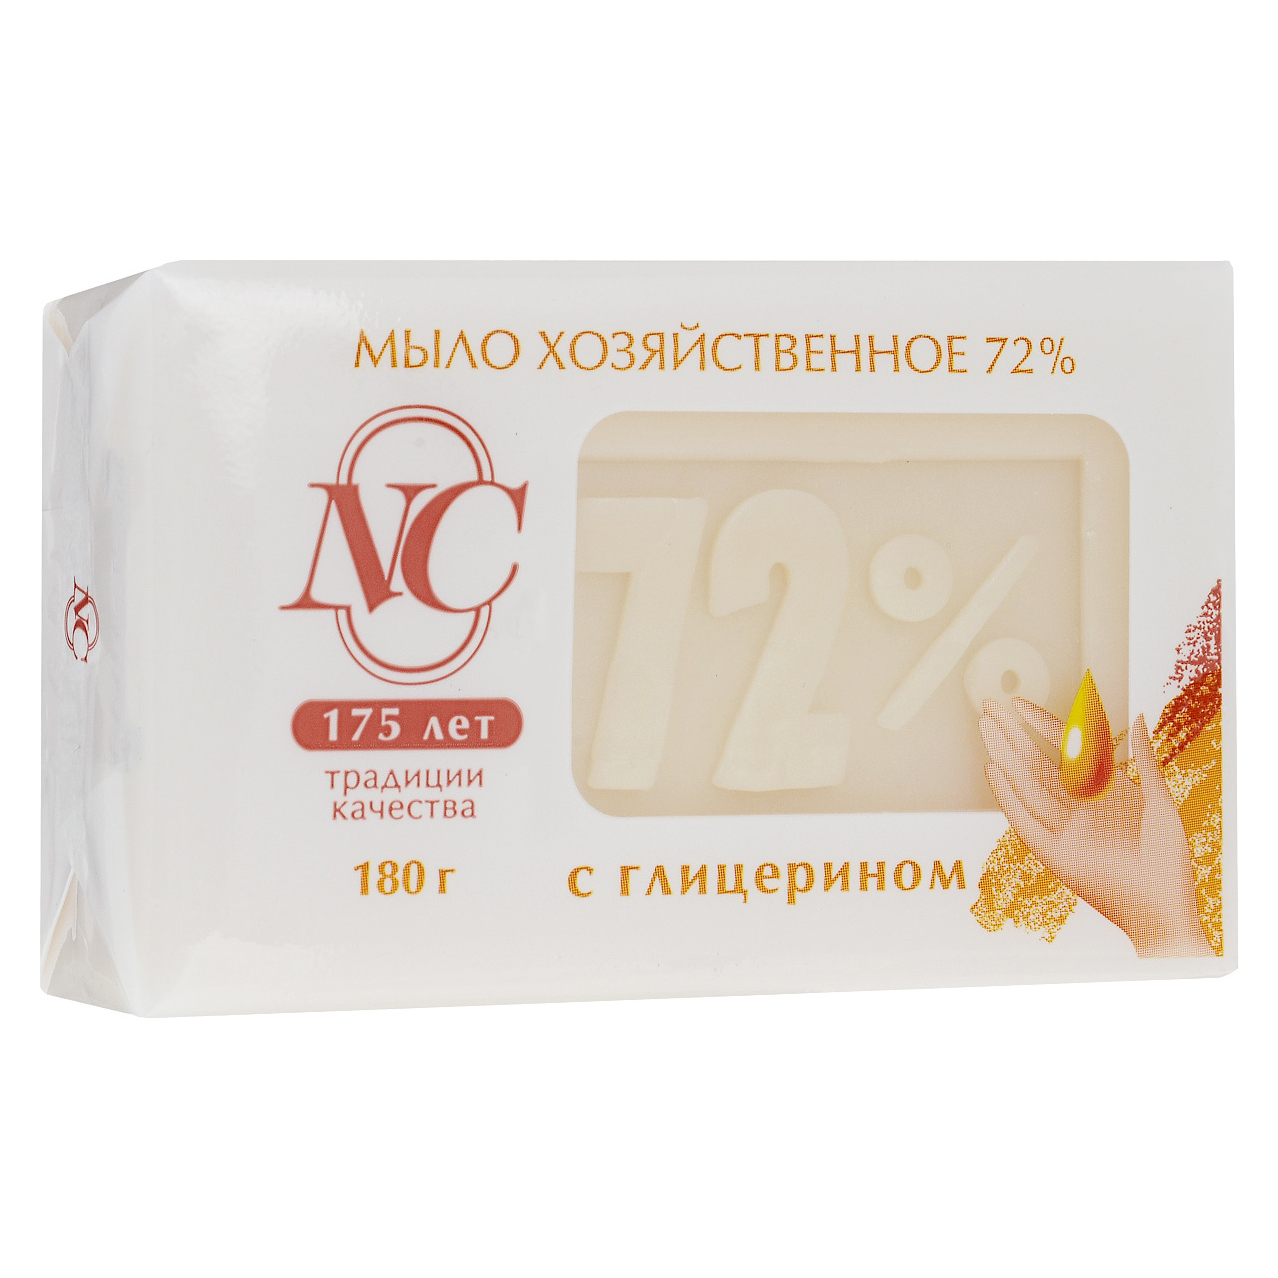 фото Традиционное хозяйственное мыло невская косметика 72% с глицерином 180 г